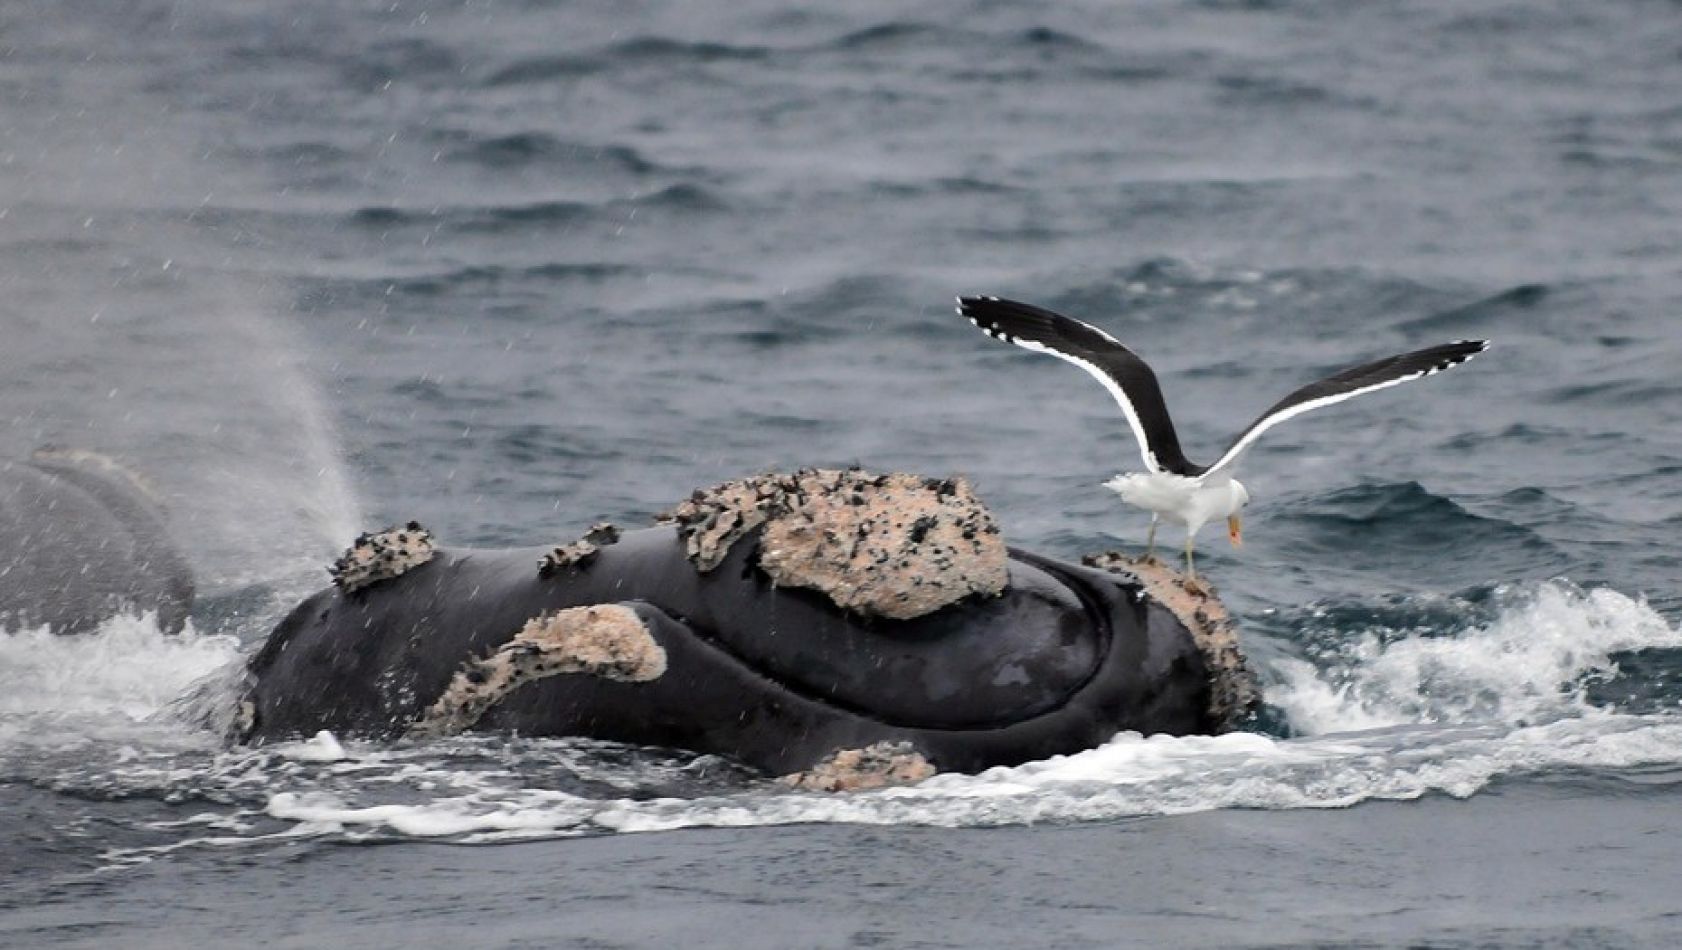 Preocupación por las ballenas en Chubut: Un estudio afirma que las gaviotas provocan “micropredación” y podría explicar el crecimiento de la tasa de mortalidad